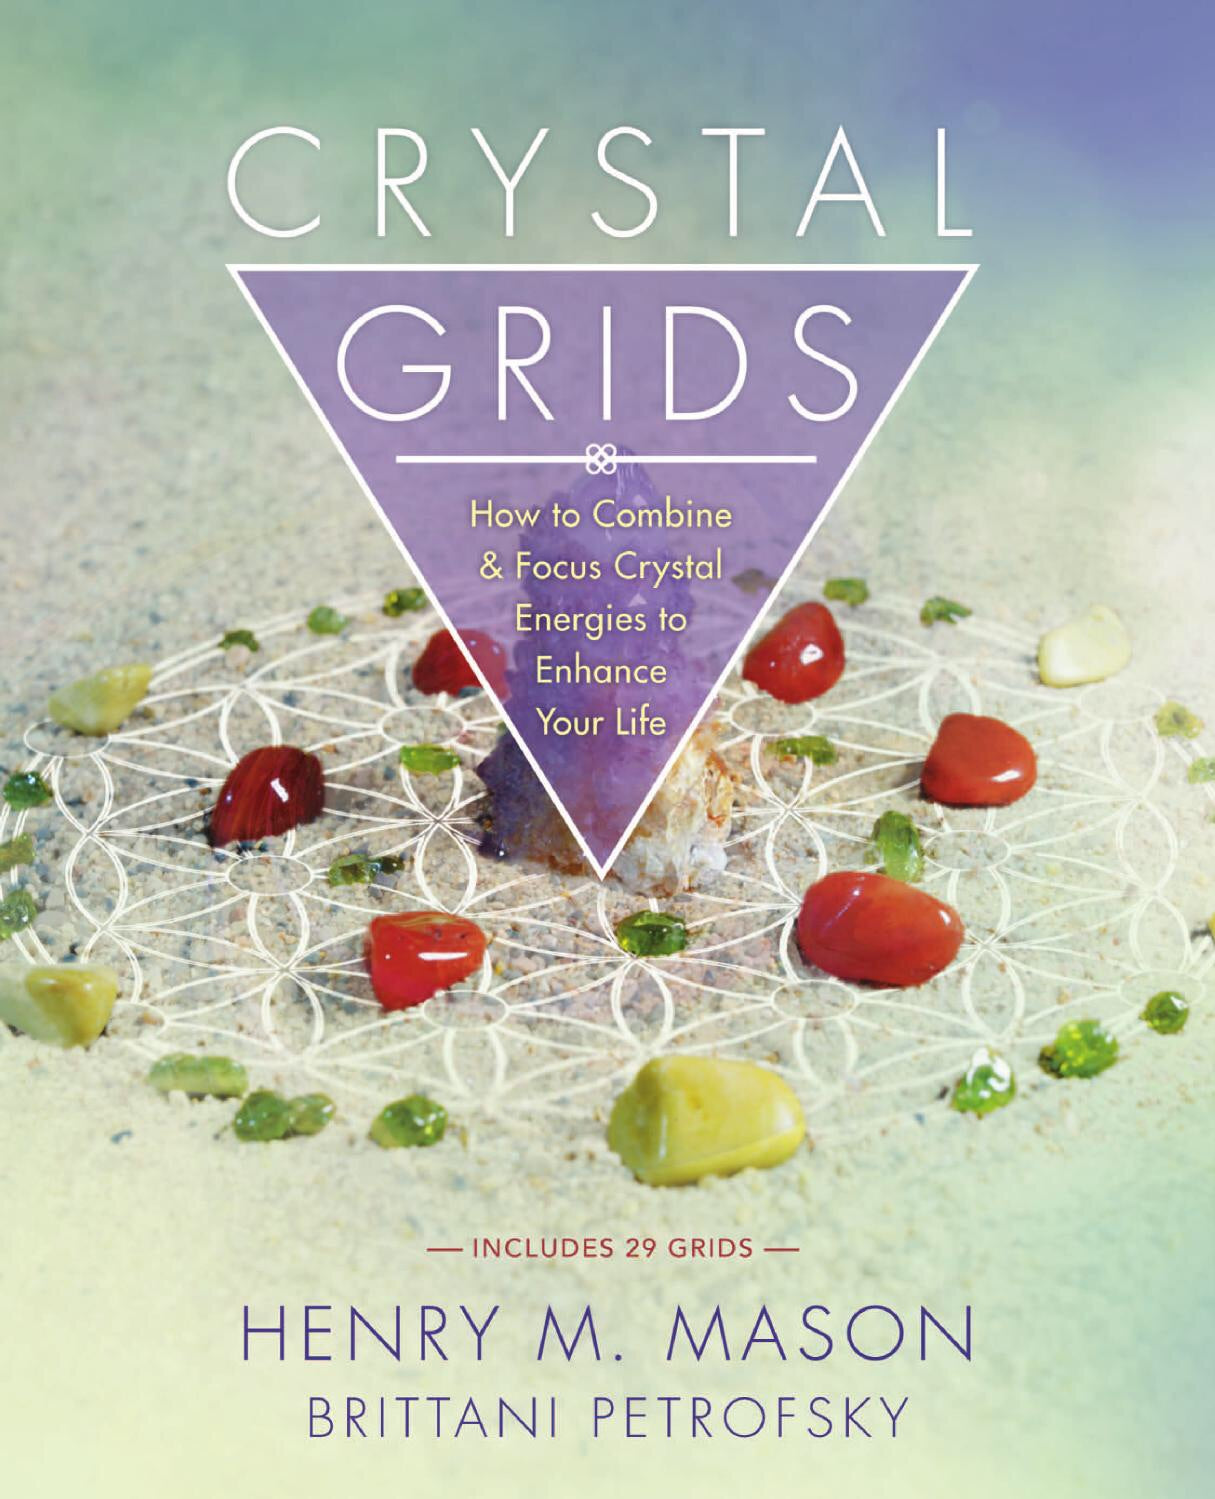 Crystal Grids by Henry M. Mason & Brittani Petrofsky - Cast a Stone